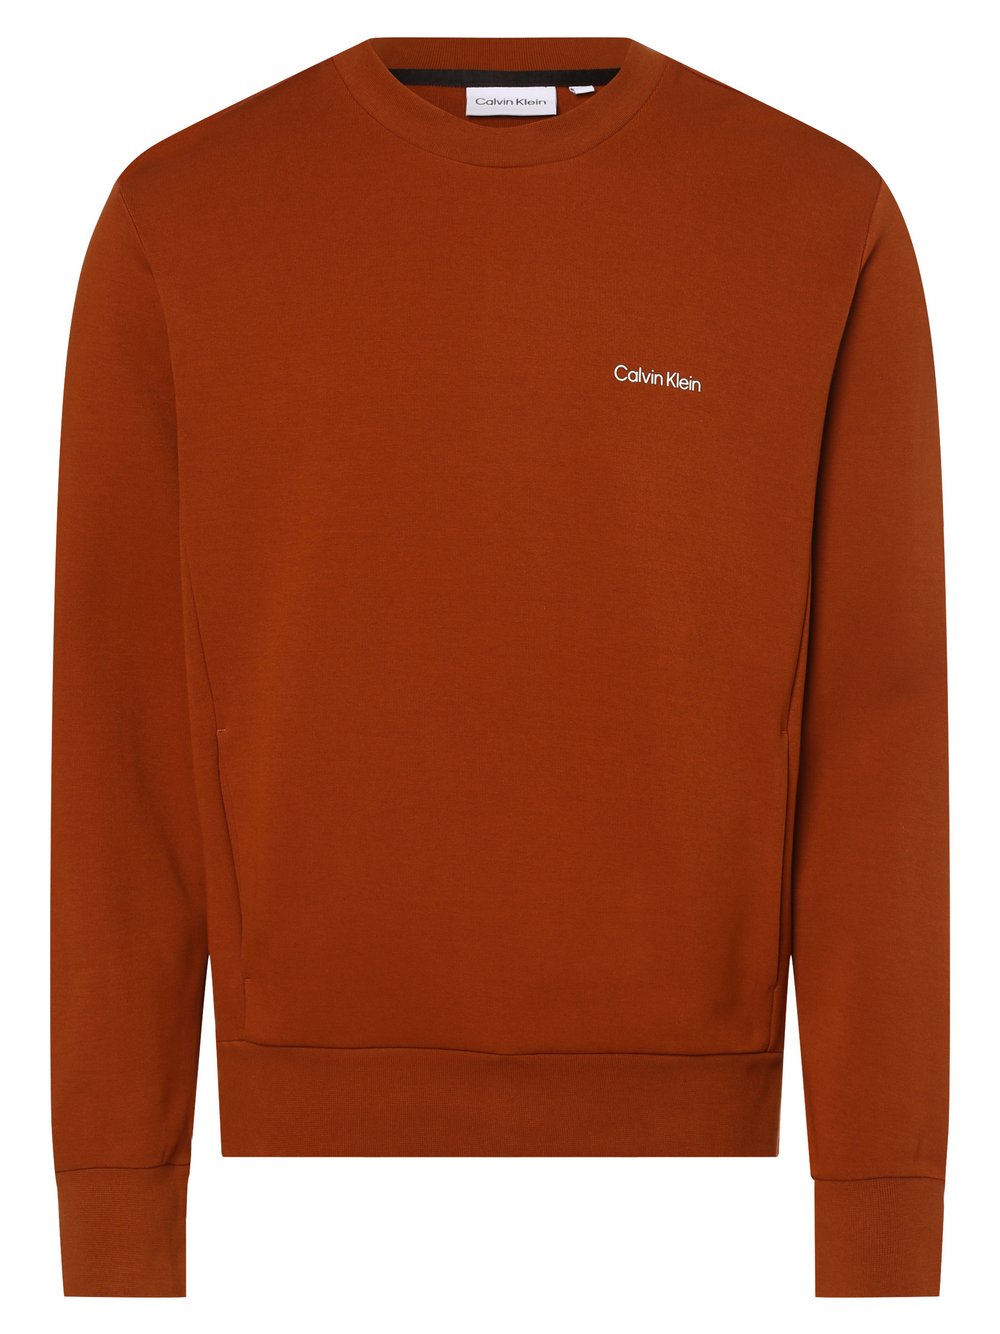 Calvin Klein - Męska bluza nierozpinana, brązowy|pomarańczowy